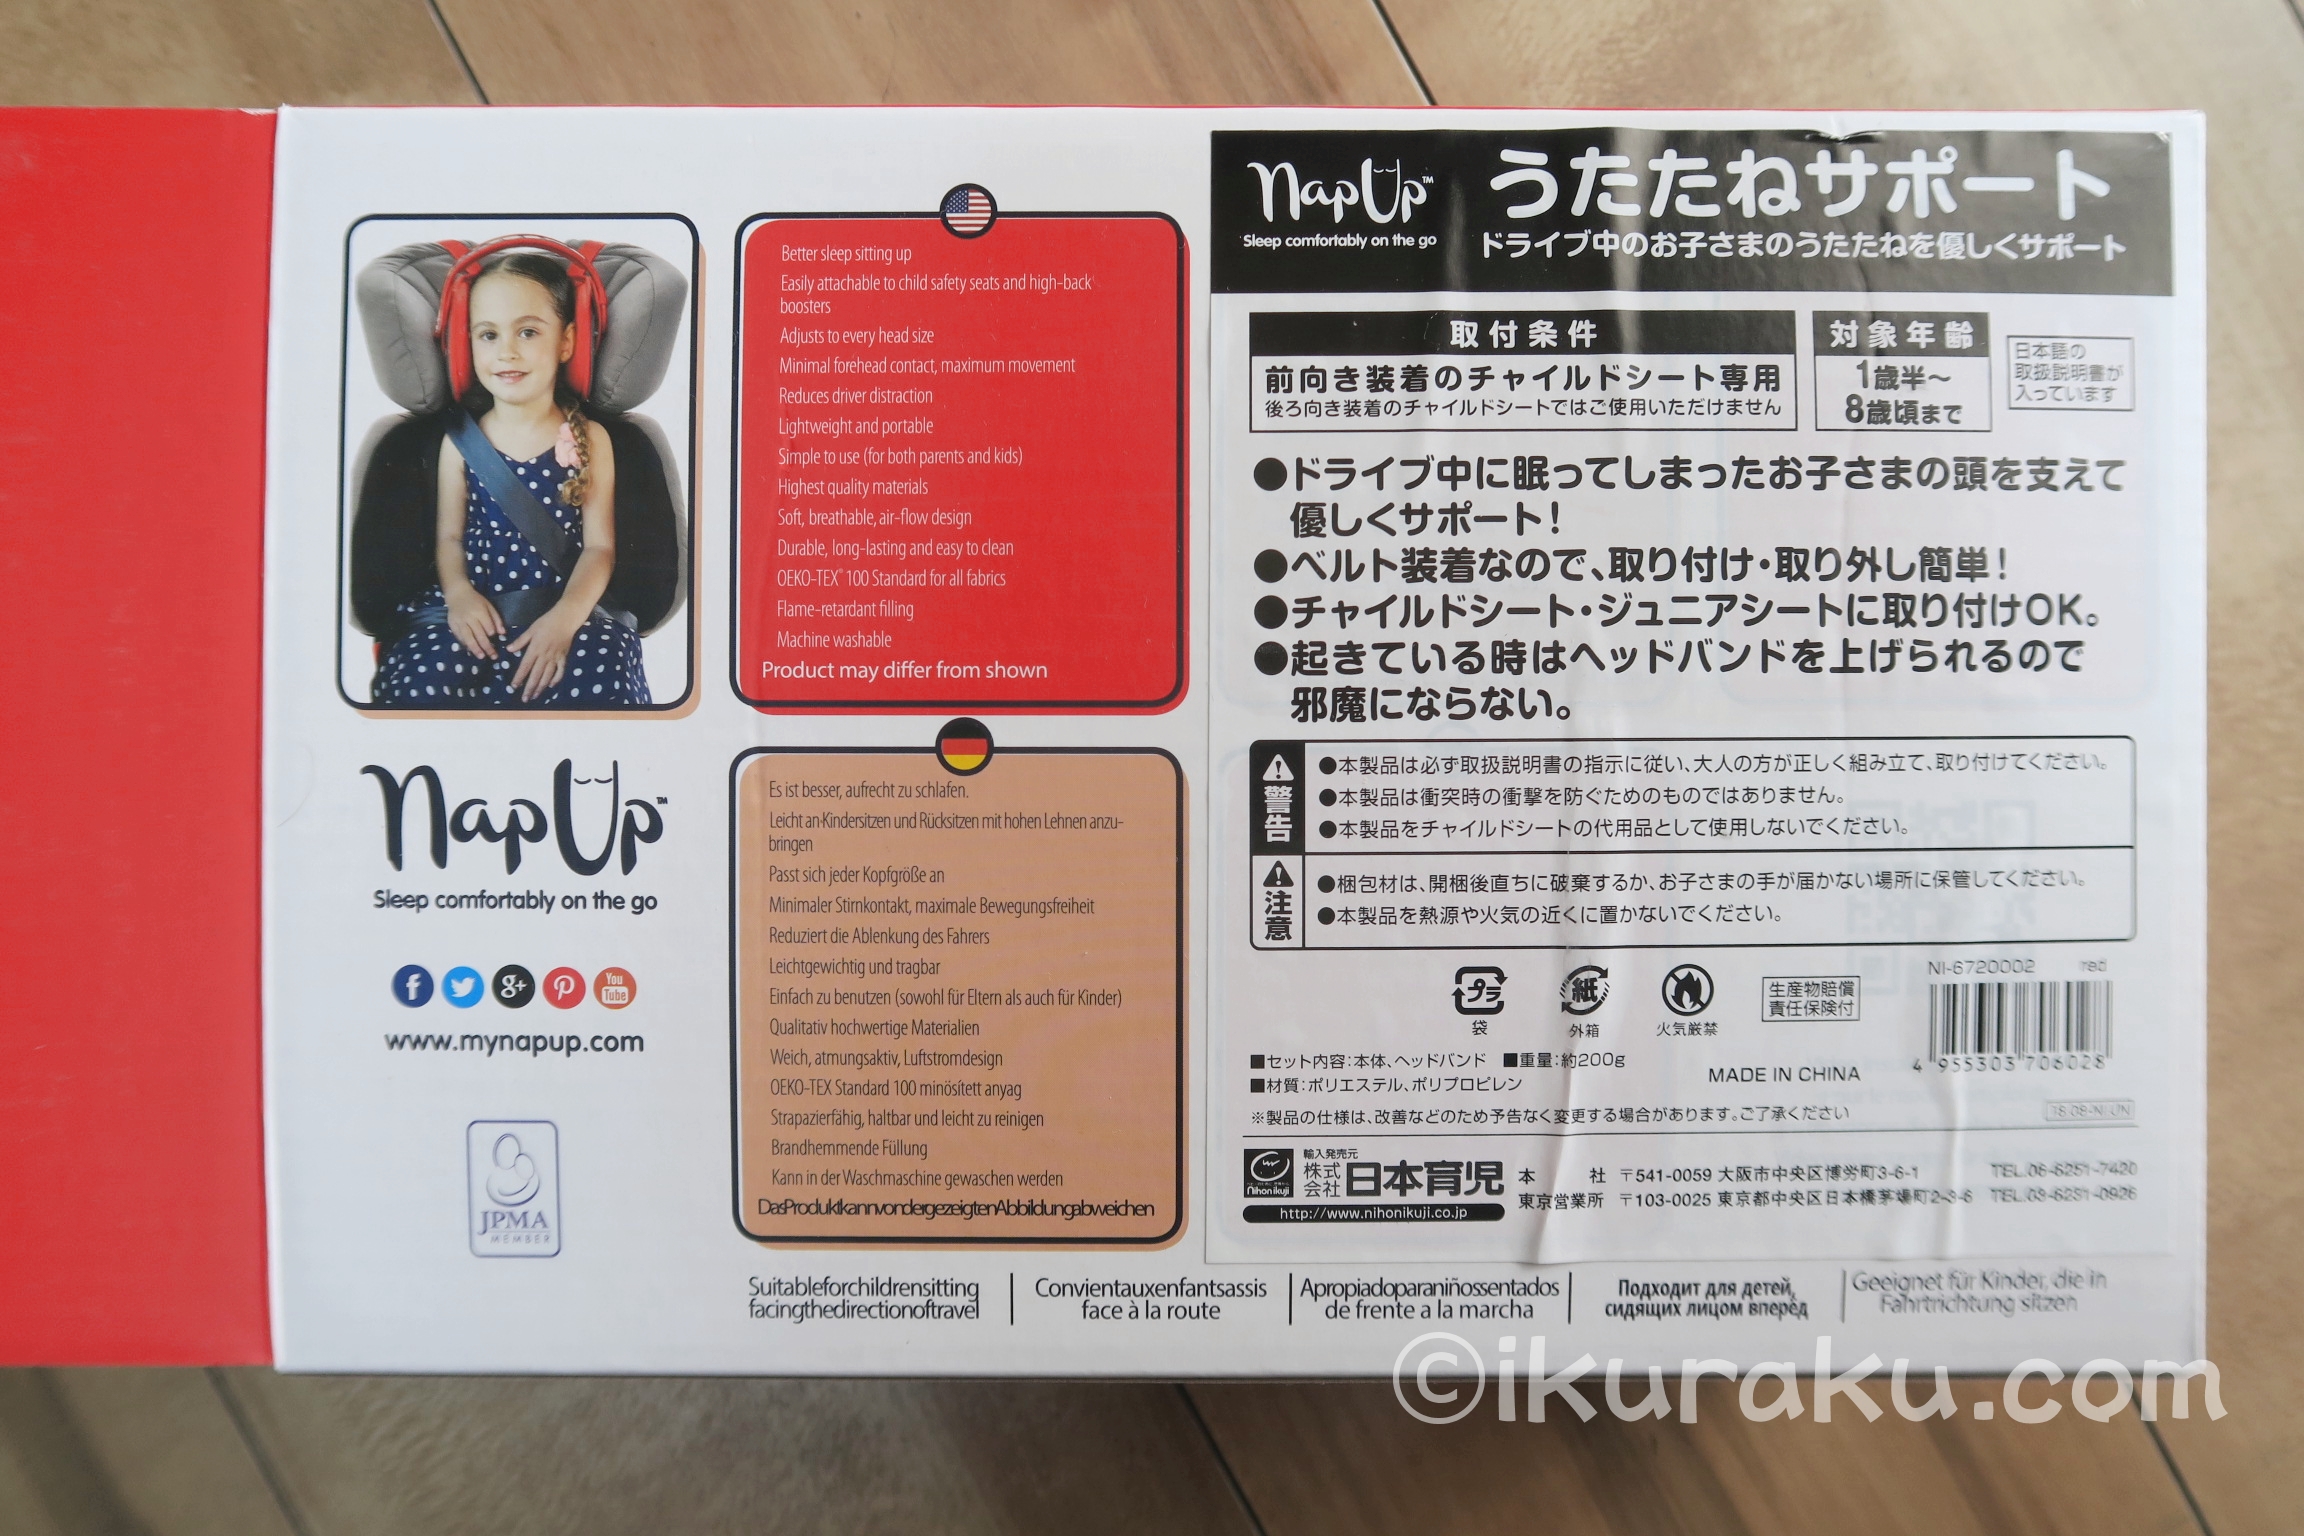 「NapUpナップアップ うたたねサポート 日本育児」の商品パッケージ裏面には輸入販売元の日本育児の説明書きシールが貼られている